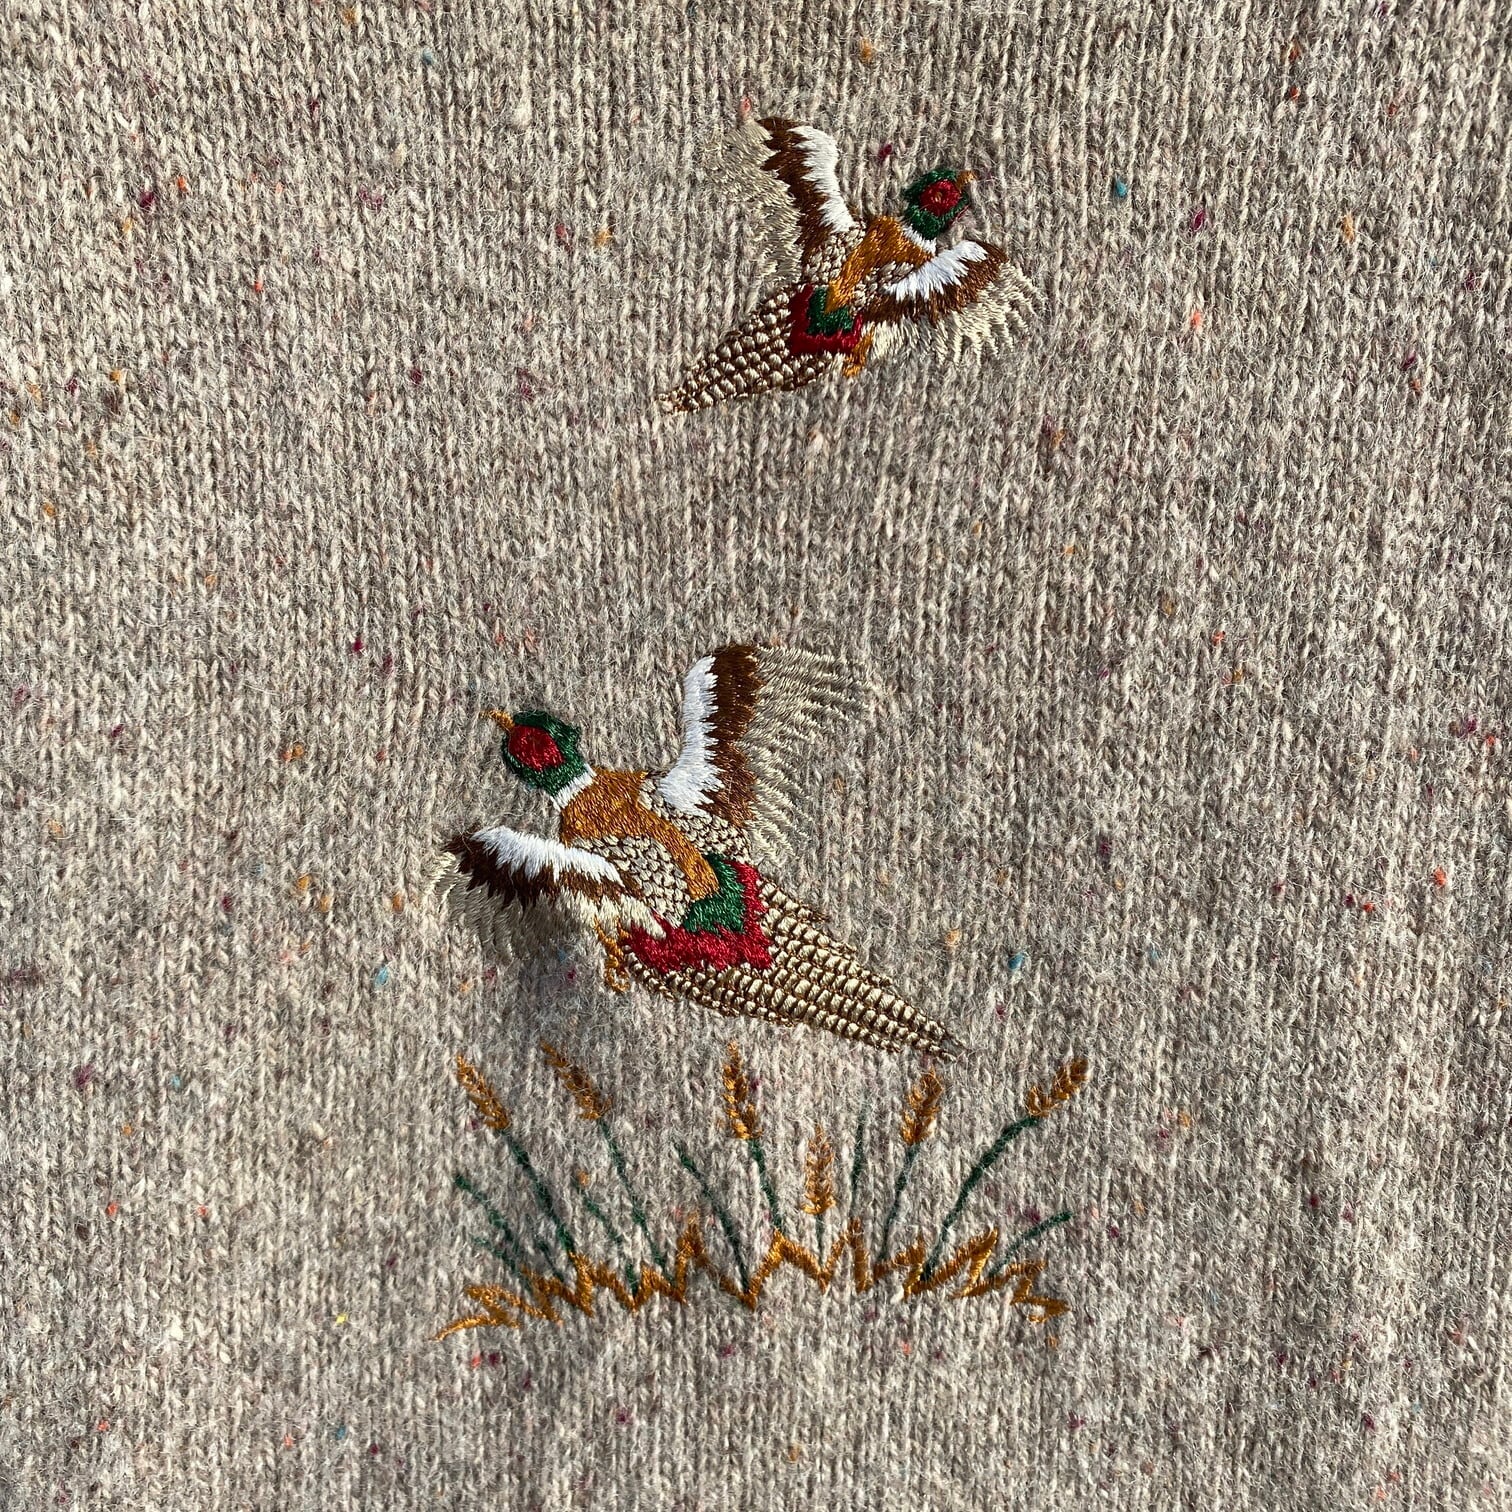 80年代 USA製 LORD JEFF キジ 鳥 アニマル 刺繍 ウールニットセーター ...